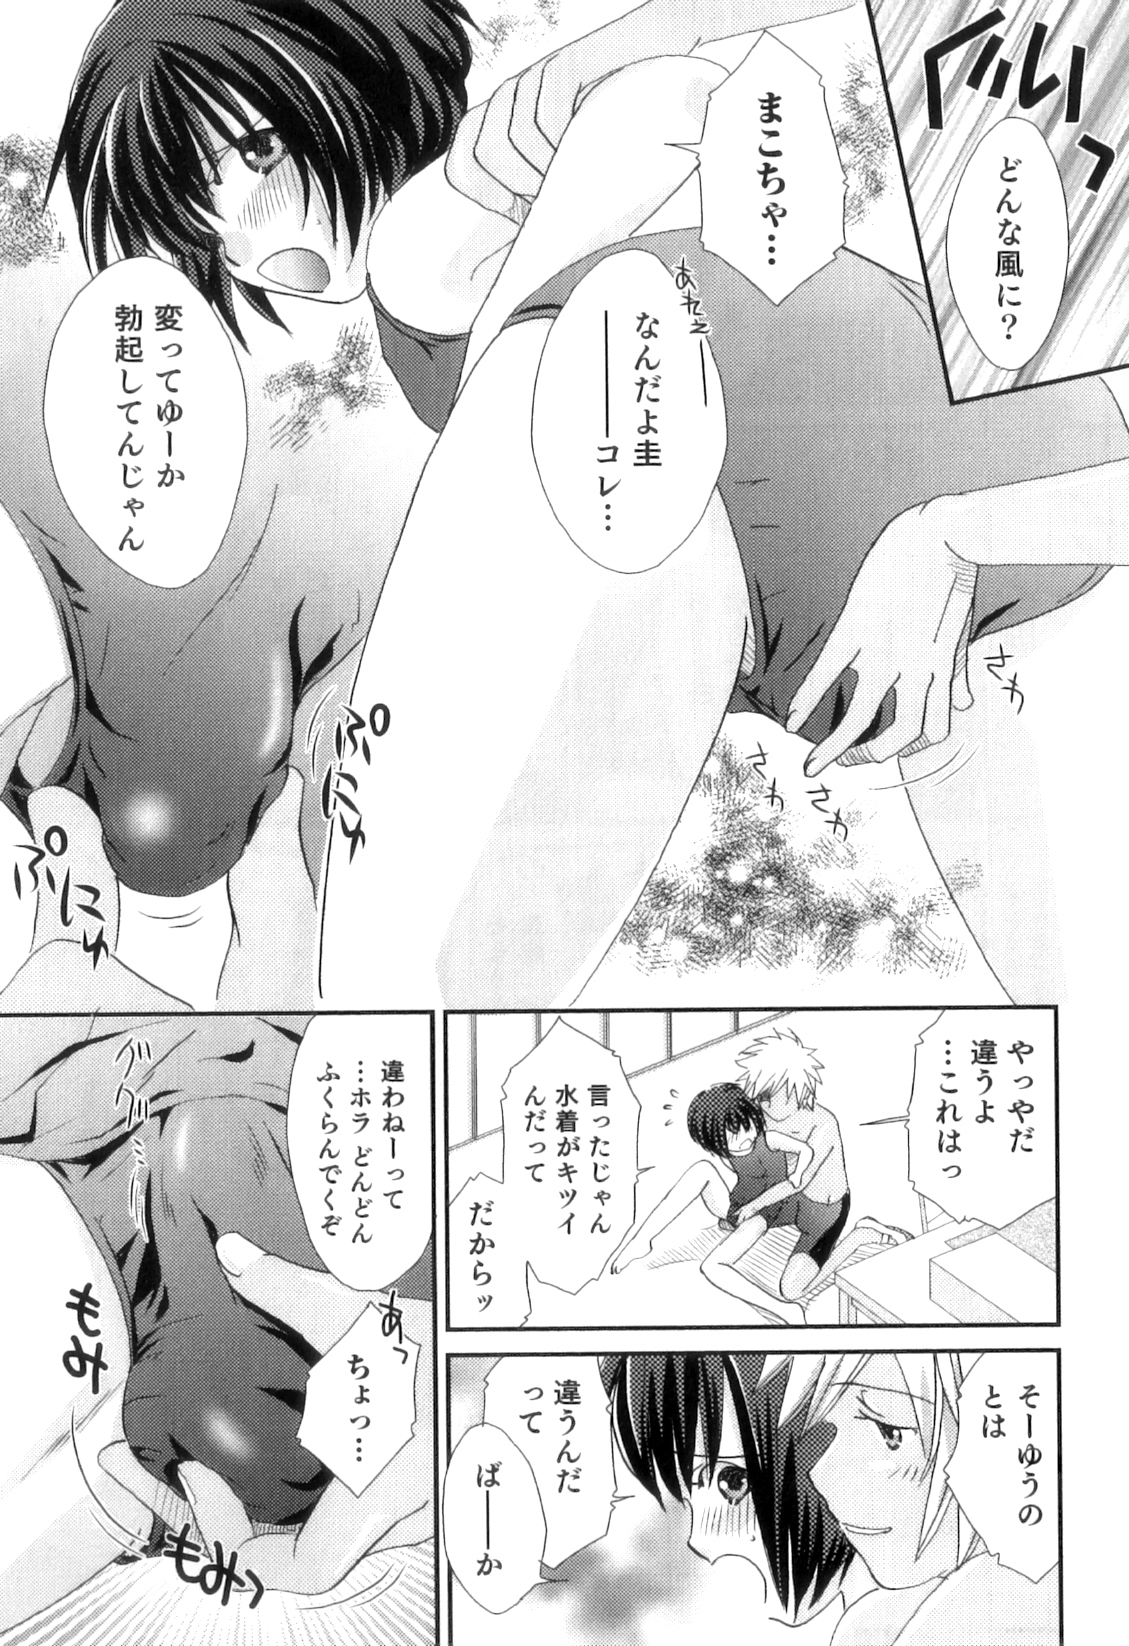 [アンソロジー] オトコのコHEAVEN Vol.11 スク水×褐色×男の娘